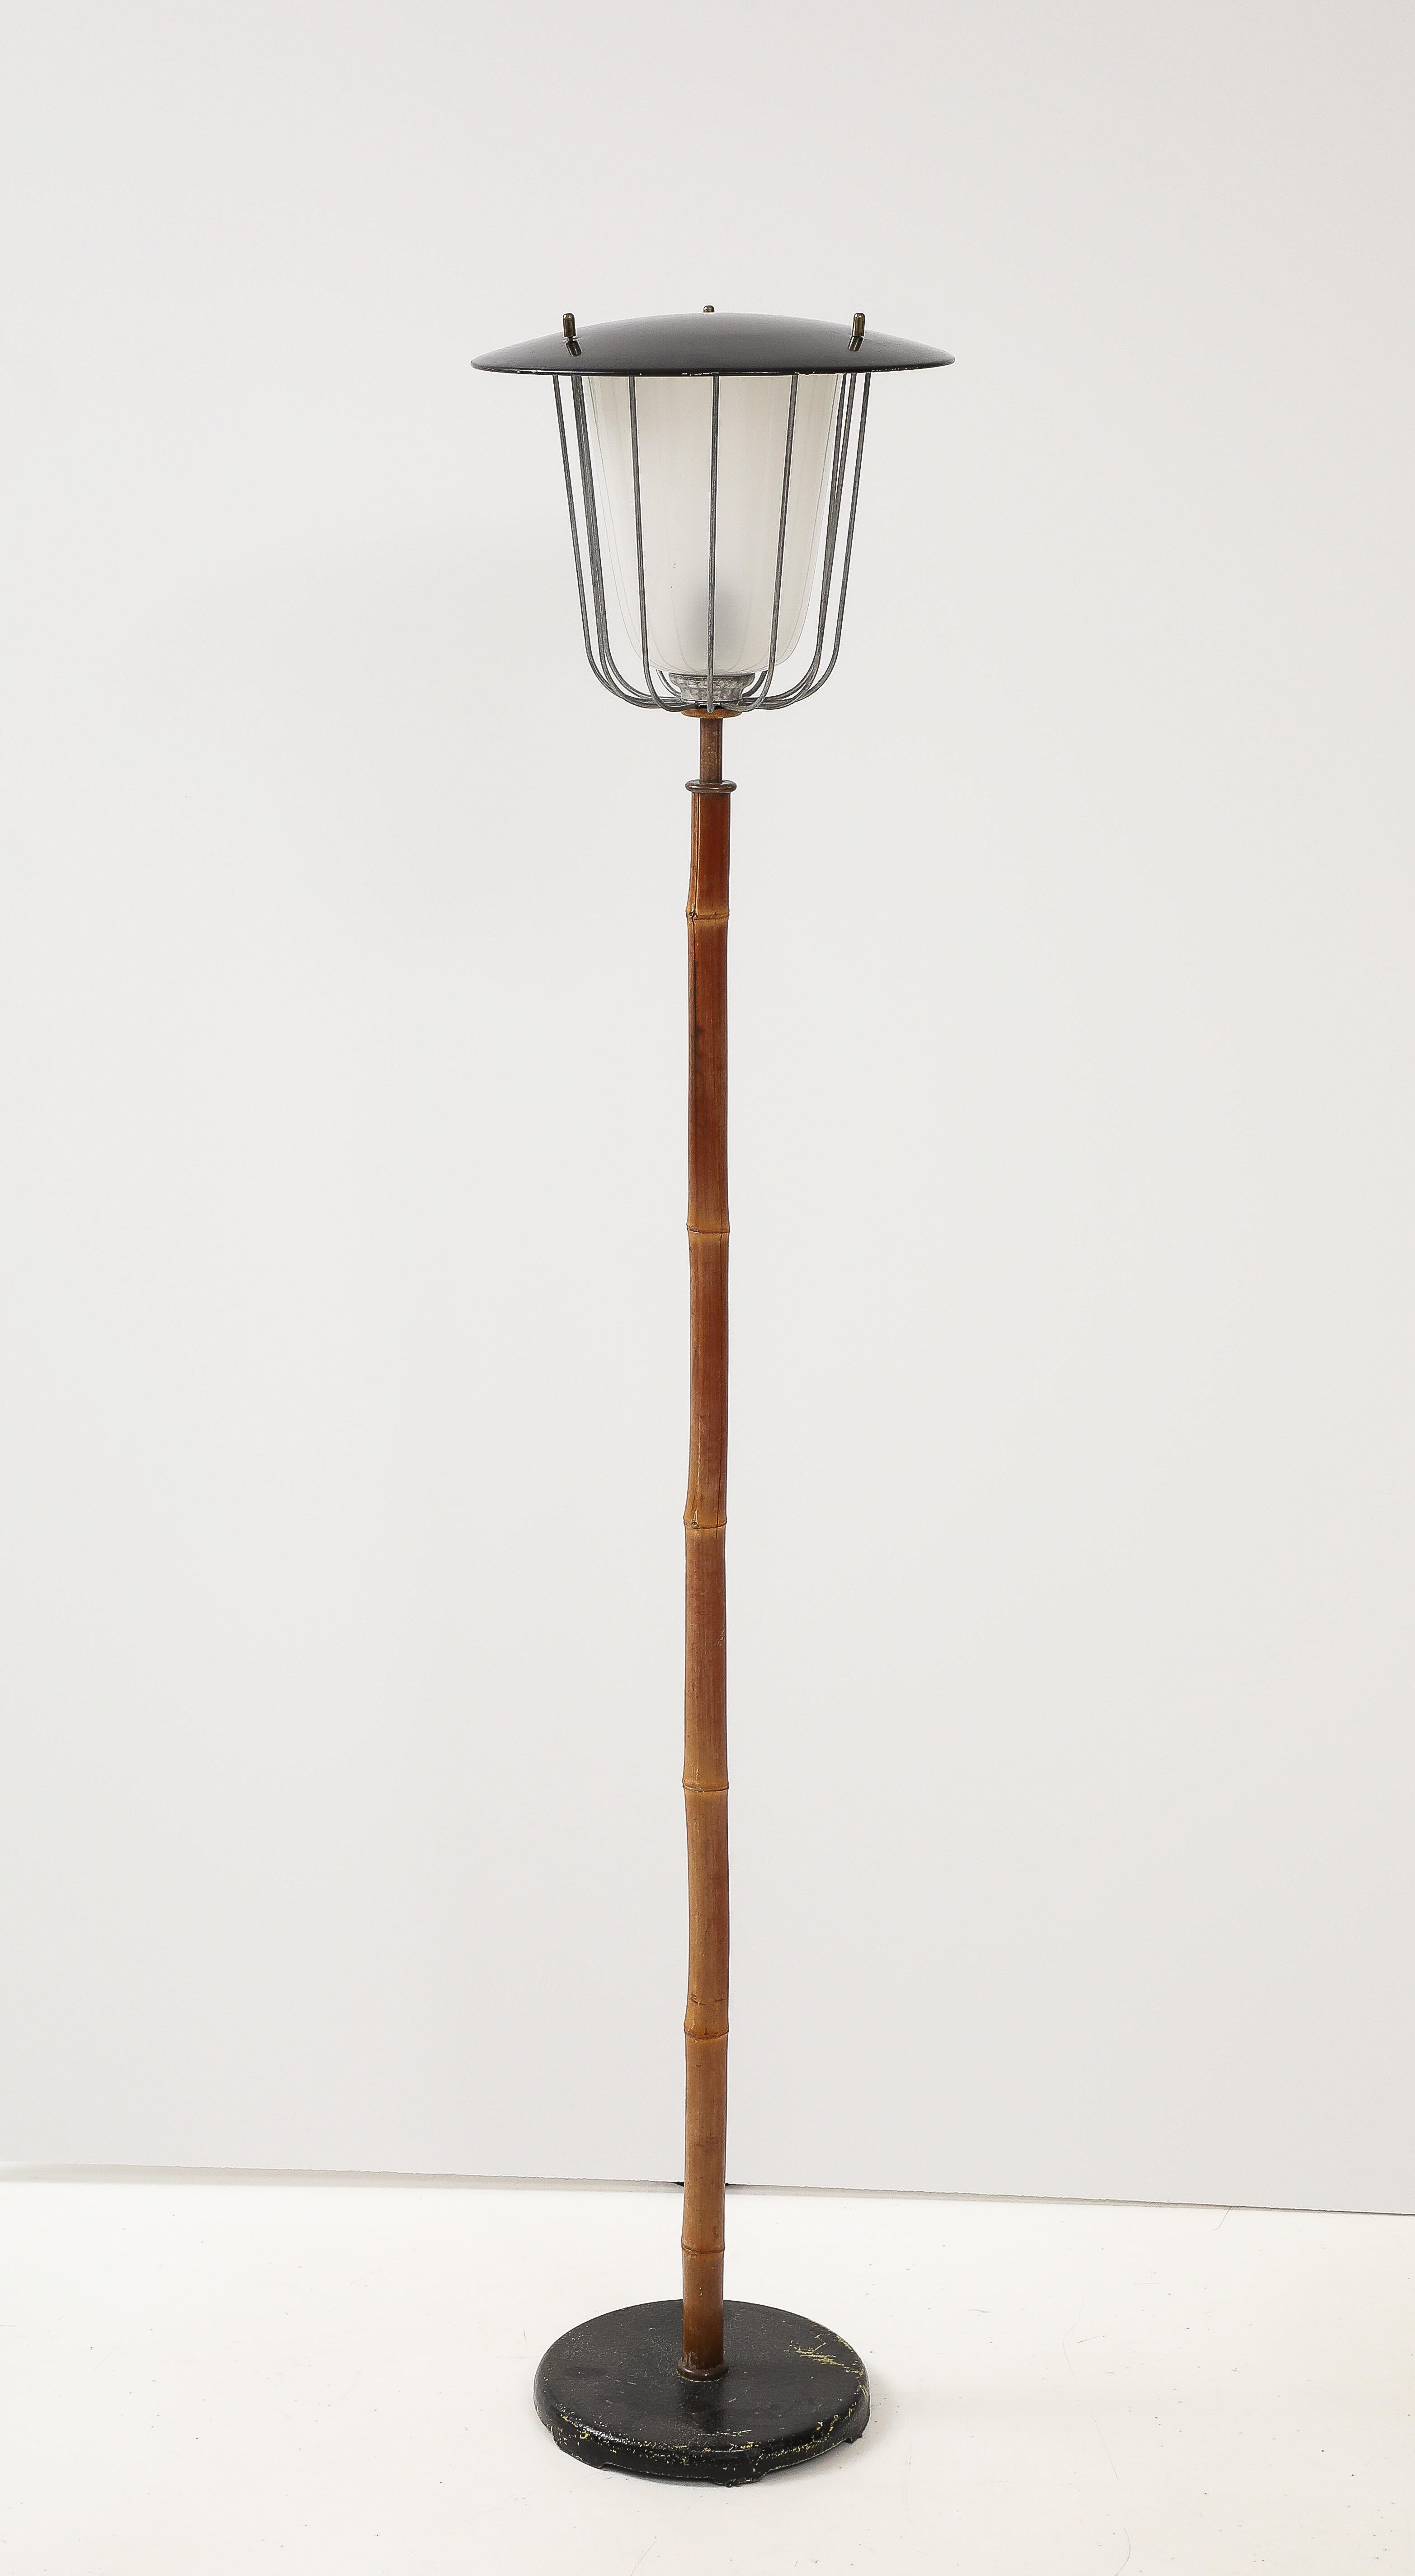 Mid Century Modern charmante sehr seltene Vintage-Stehleuchte ist eine echte Ikone des Wiener Designs von 1960.
Die Stehleuchte Nr. 2081 namens Karla wurde von J. T. Kalmar entworfen und von Kalmar um 1960 in Wien hergestellt.
Die Lampe wurde aus